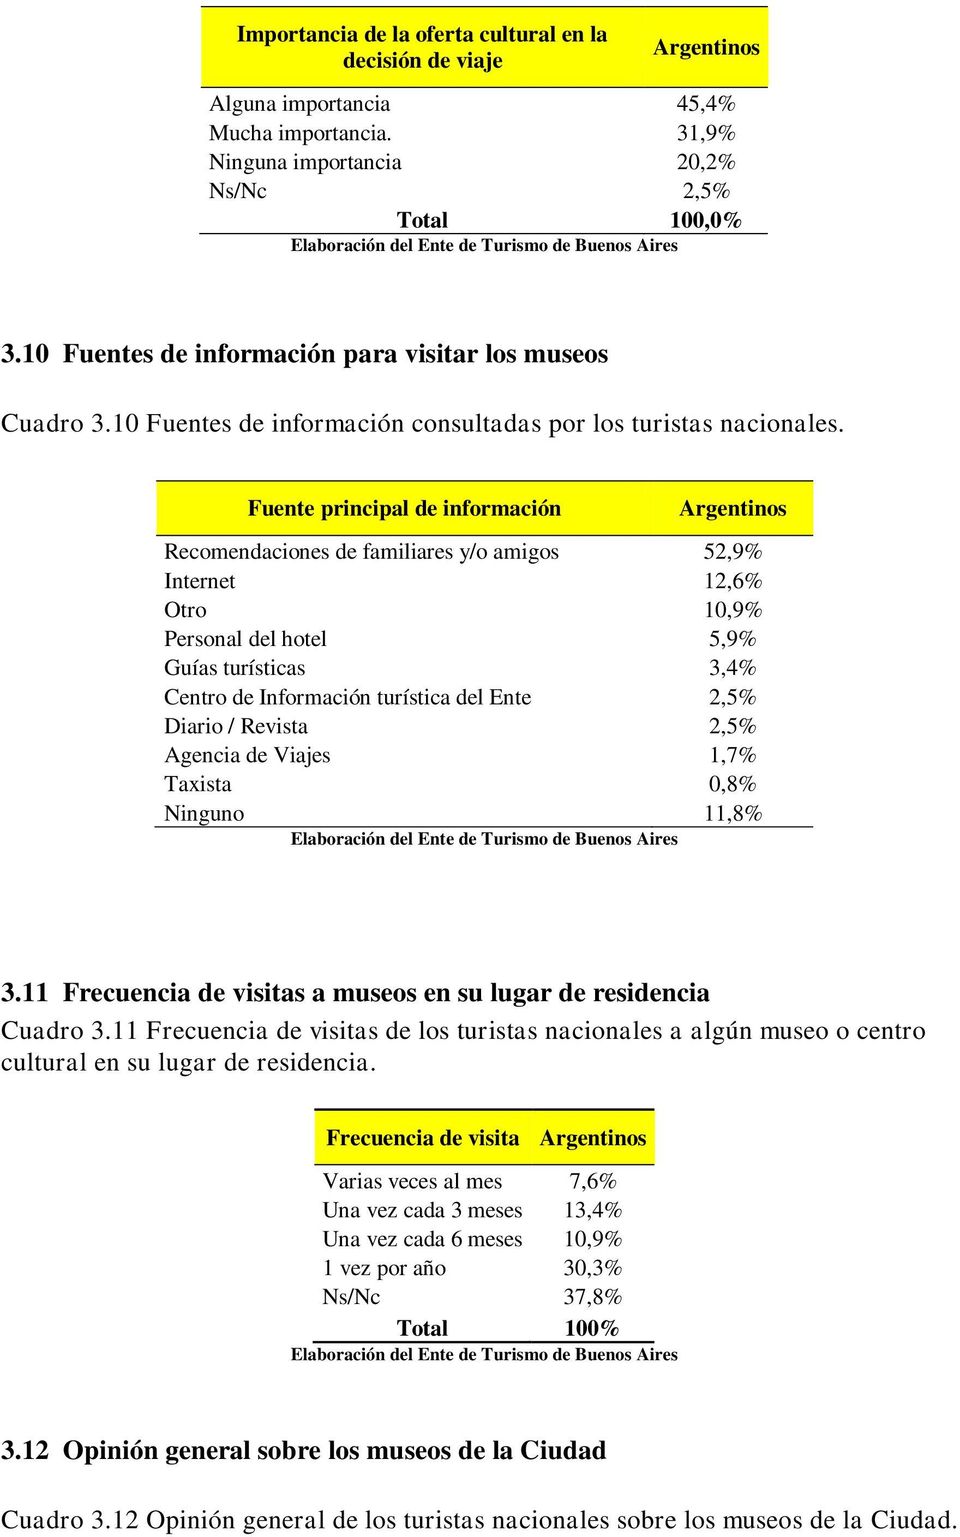 Fuente principal de información Argentinos Recomendaciones de familiares y/o amigos 52,9% Internet 12,6% Otro 10,9% Personal del hotel 5,9% Guías turísticas 3,4% Centro de Información turística del